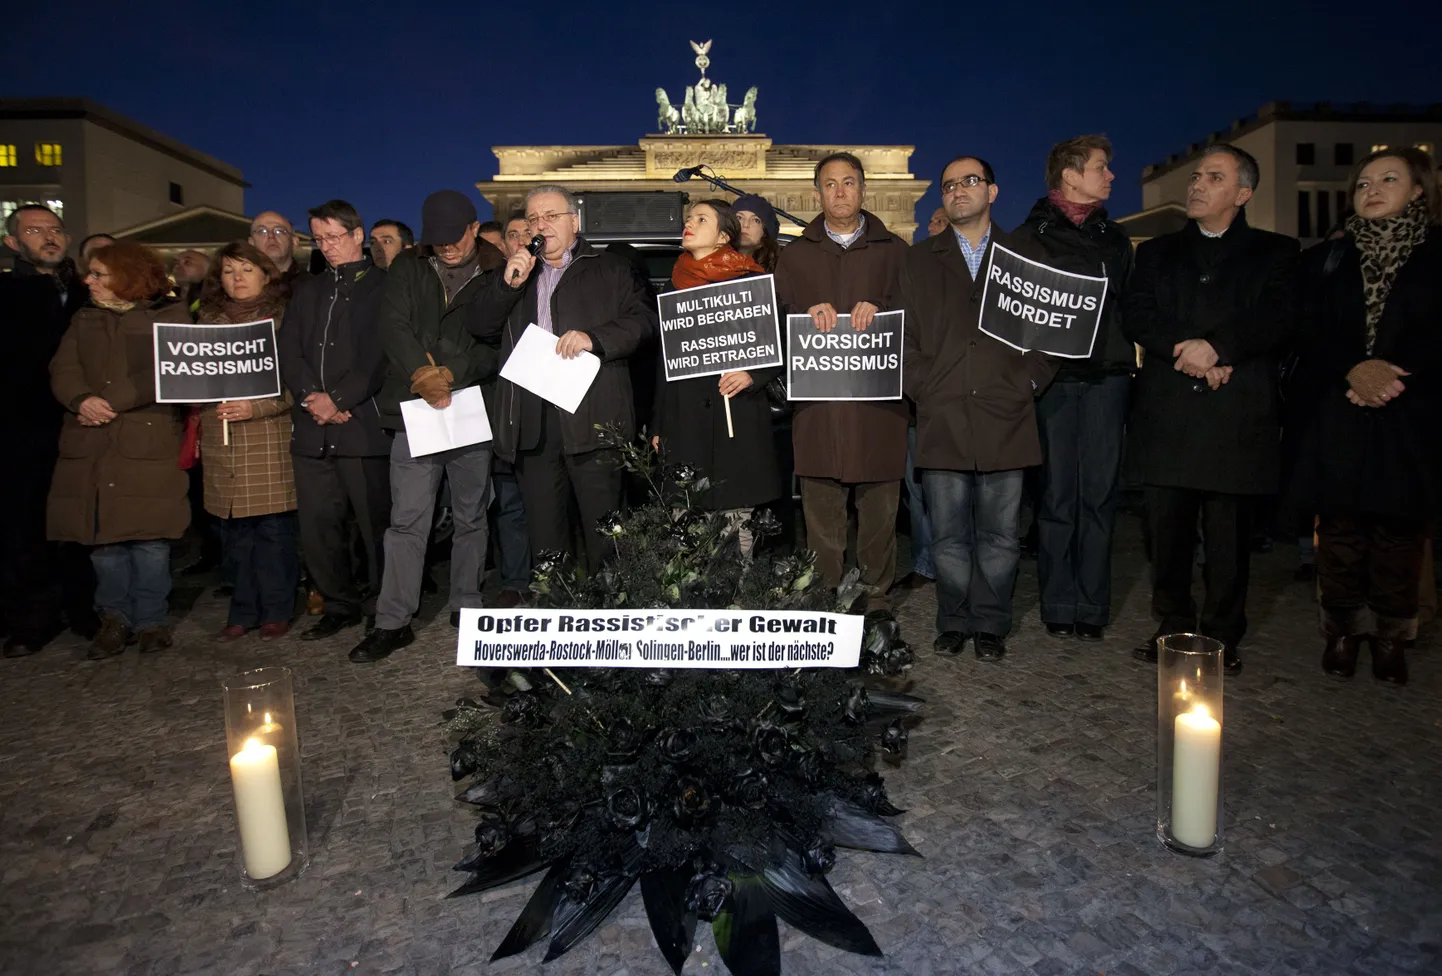 Saksamaal mälestatakse neonatside ohvreid